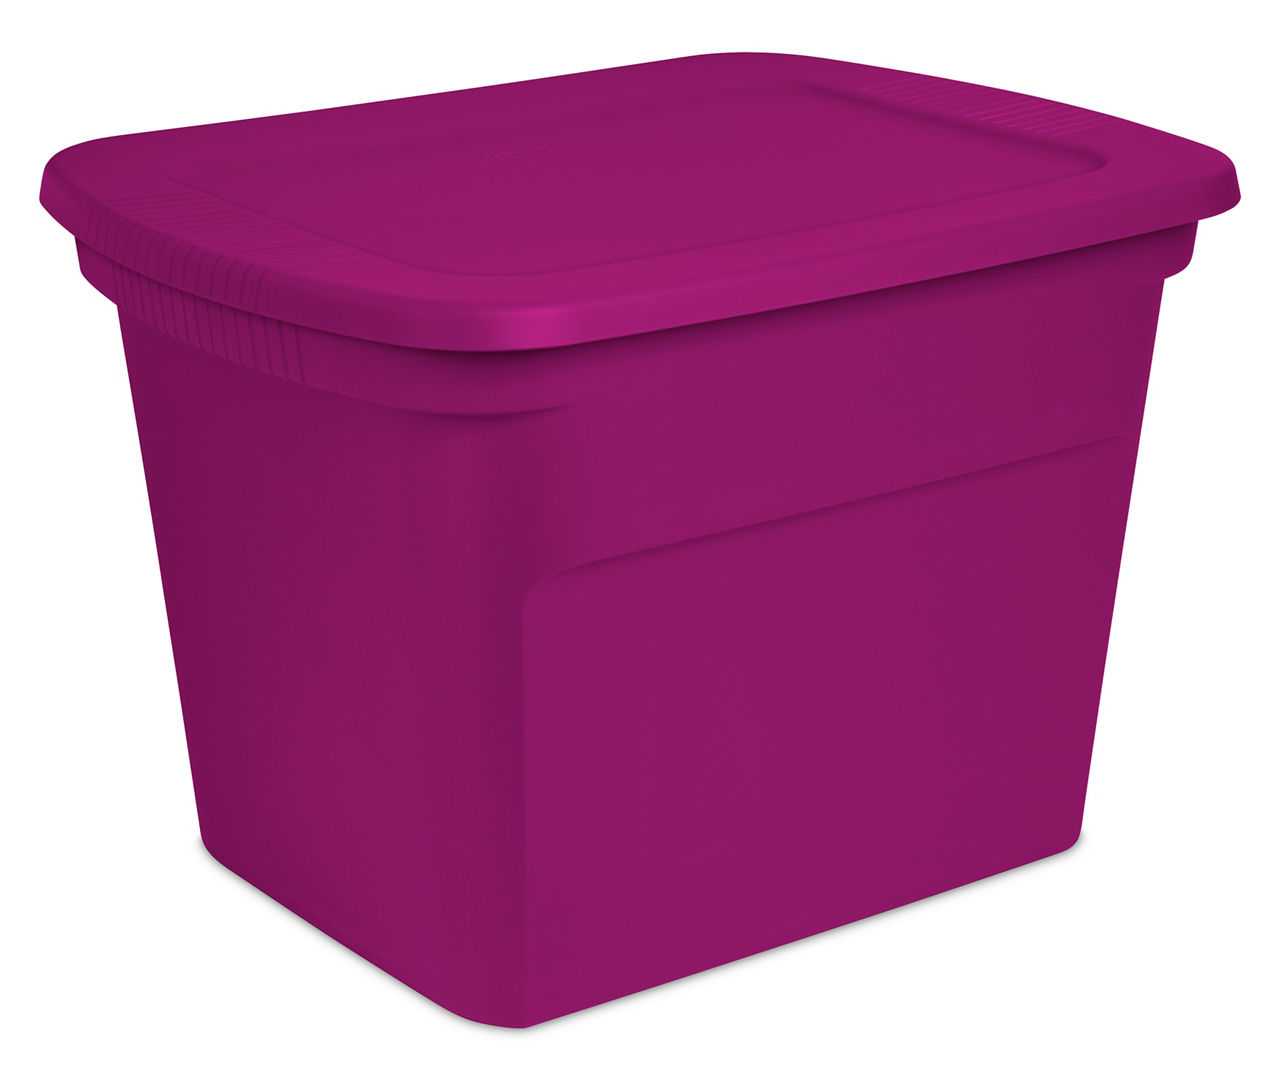 Sterilite 18 Gallon Tote Box Plastic, Fuchsia Burst, Set of 8, Pink